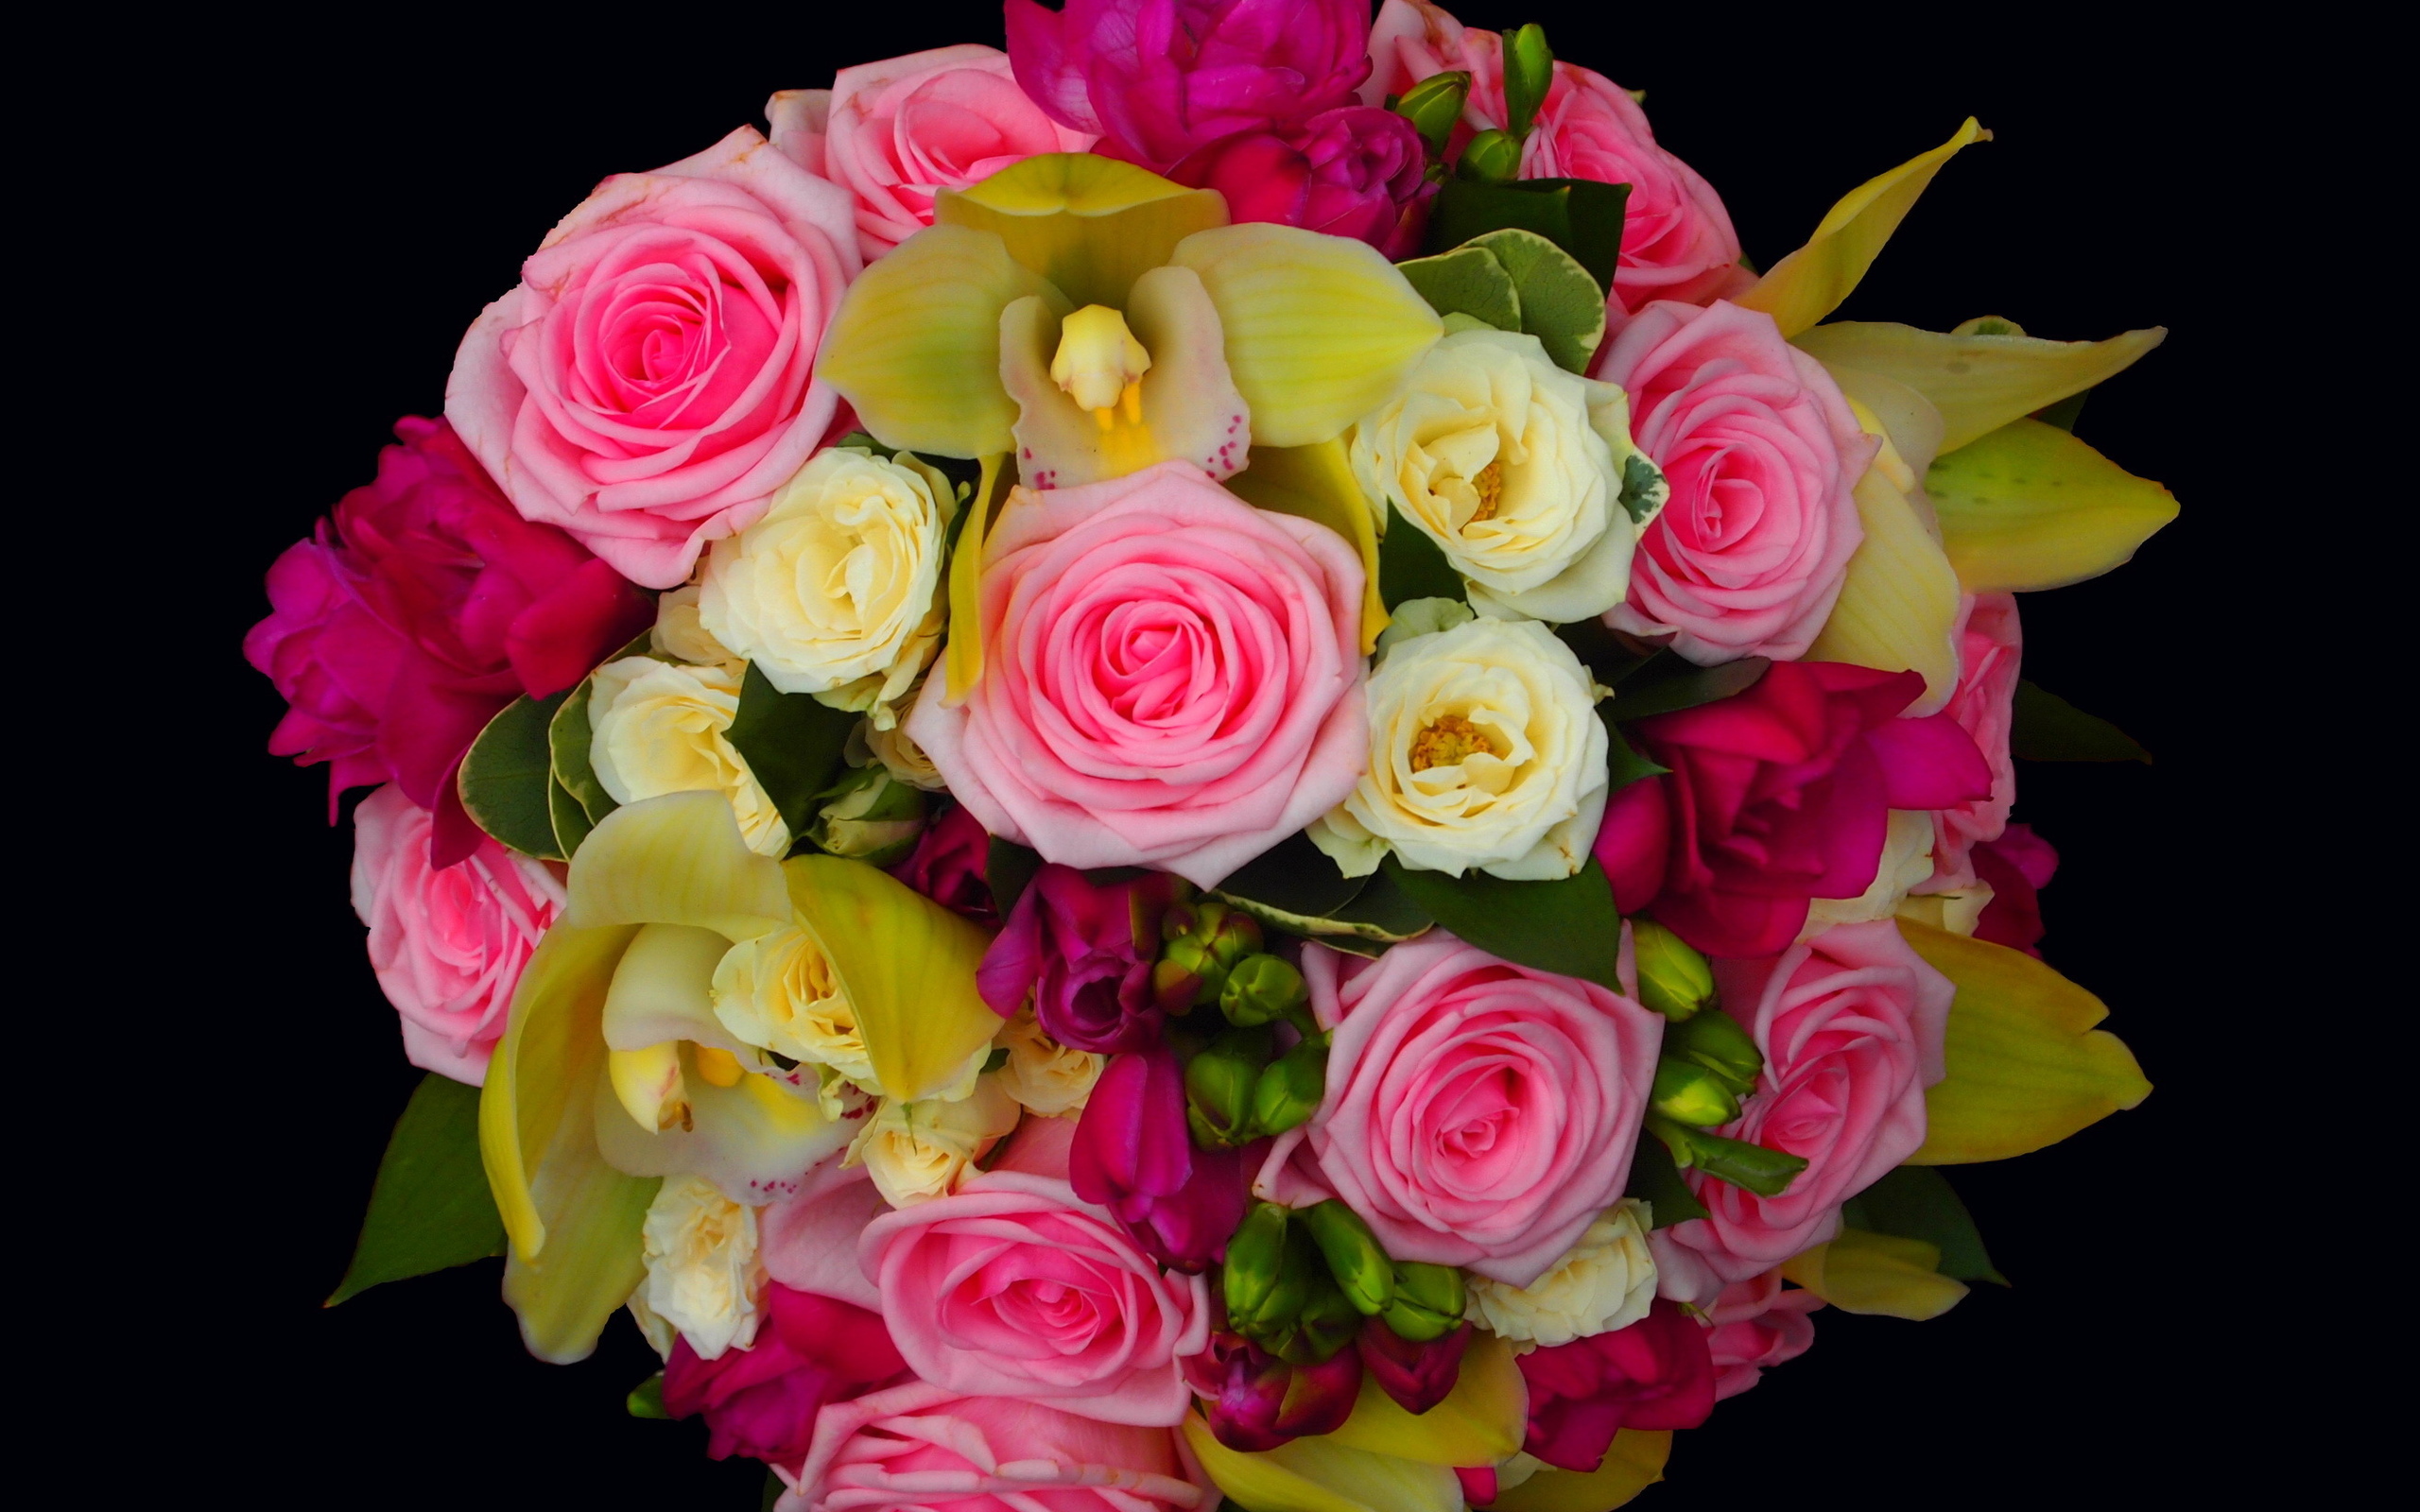 Скачать обои бесплатно Цветок, Роза, Букет, Орхидея, Желтый Цветок, Фиолетовый Цветок, Сделано Человеком, Розовый Цветок картинка на рабочий стол ПК